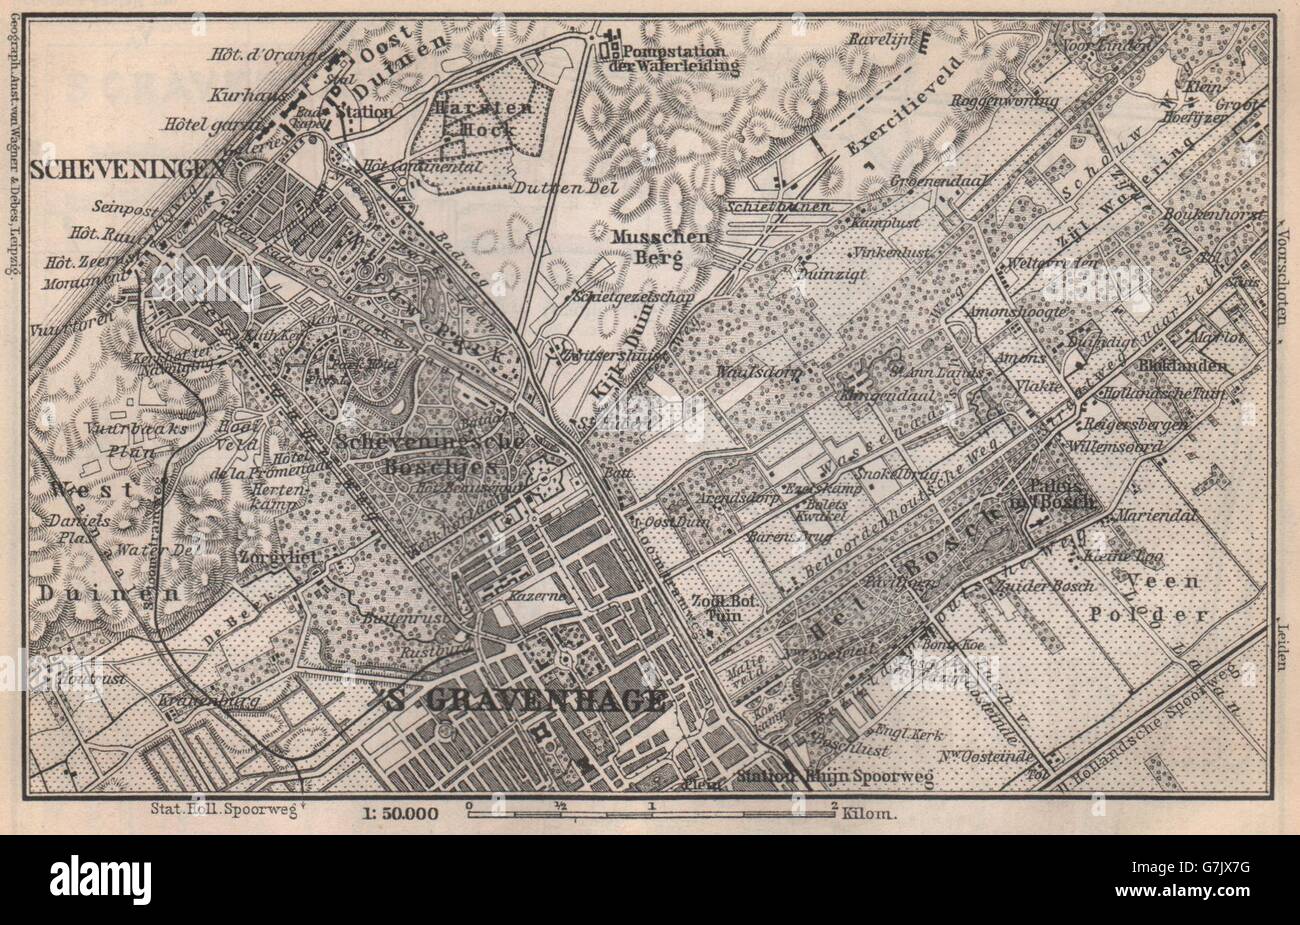 SCHEVENINGEN Y LA HAYA DEN HAAG 's-Gravenhage alrededores. Países Bajos, 1897 mapa Foto de stock